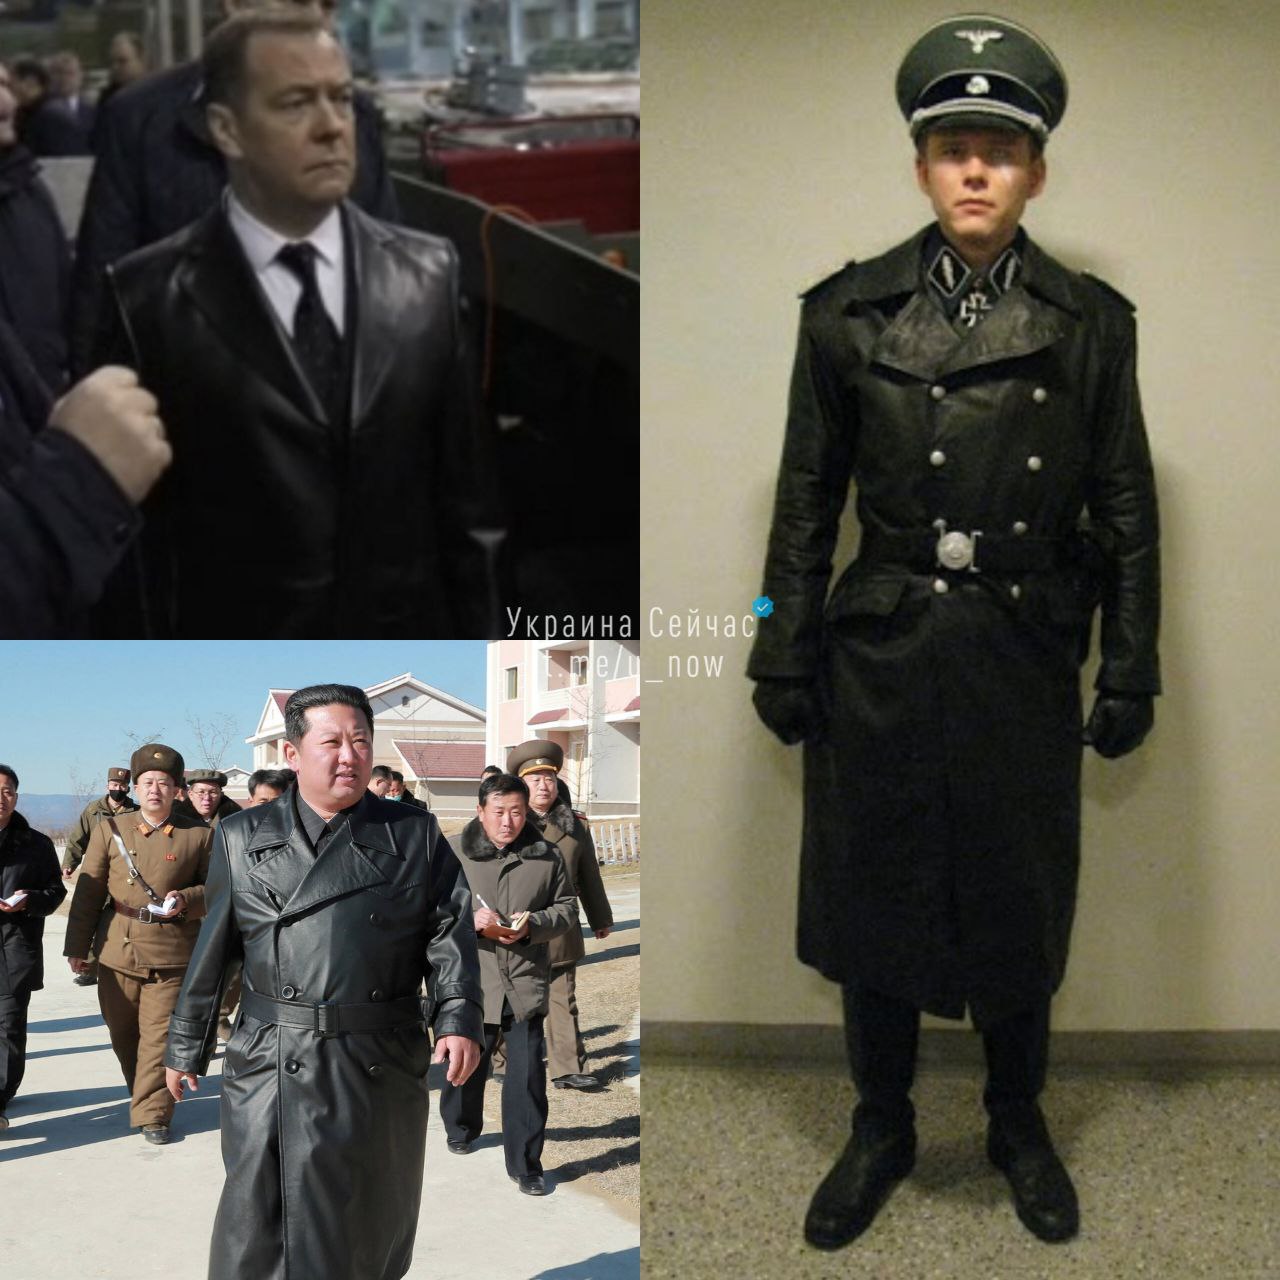 Тема нацизма перманентно преследует Медведева